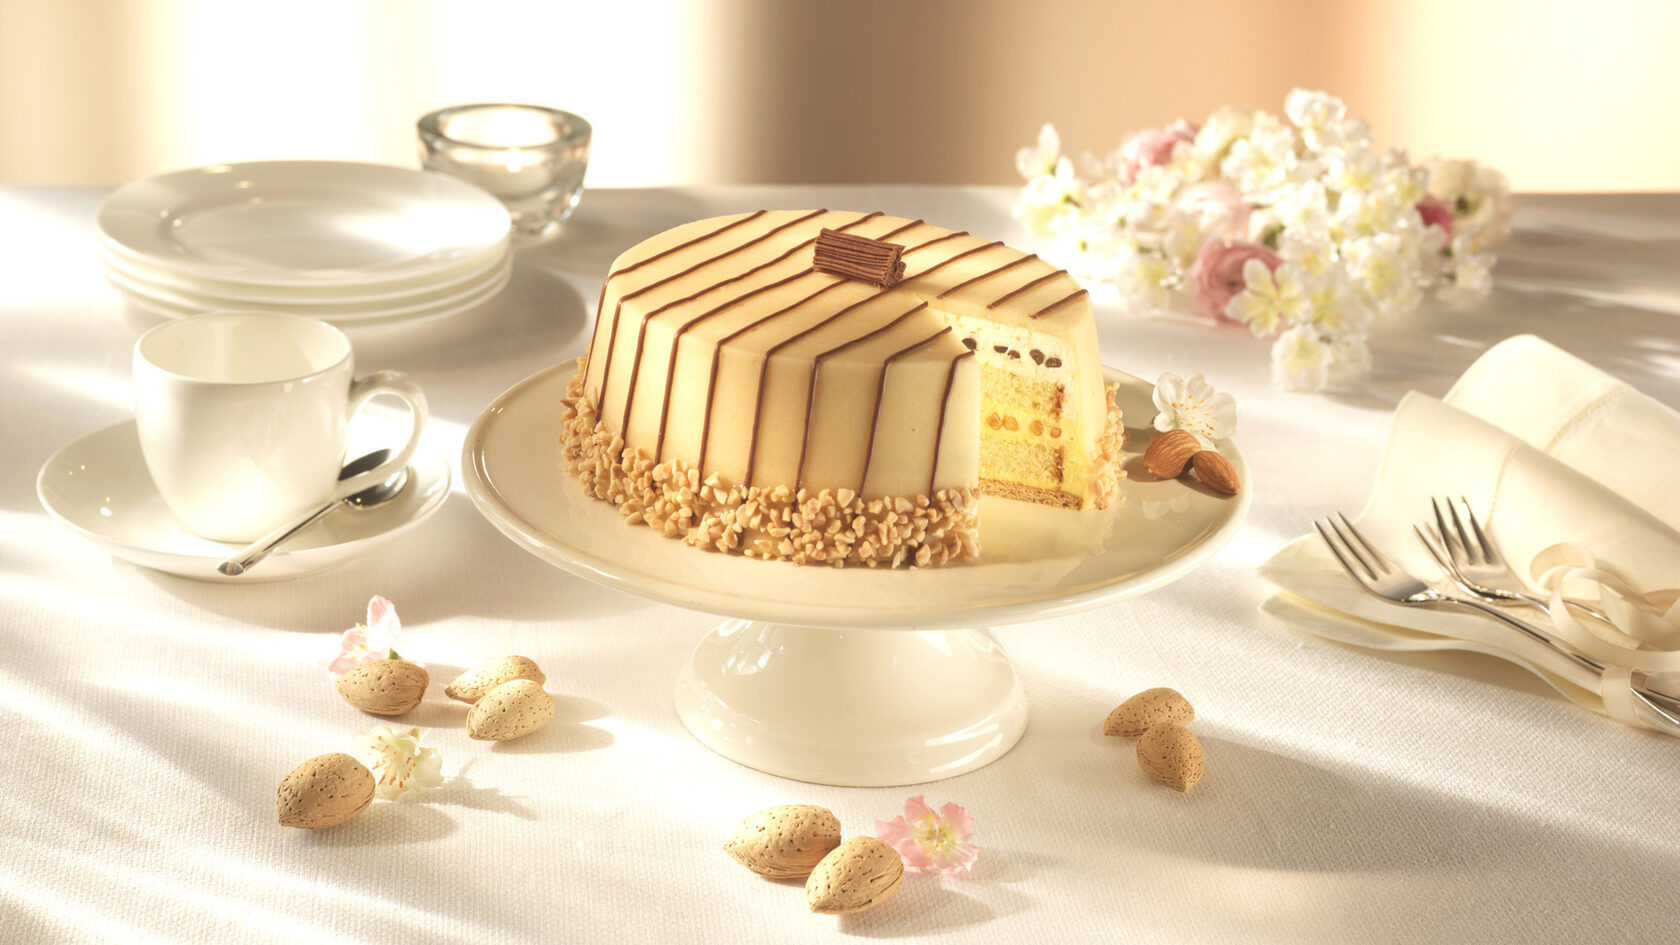 Лучшие кондитерские города Перми - лови вкус каждой сладости, заказывая торт в уютных пекарнях!